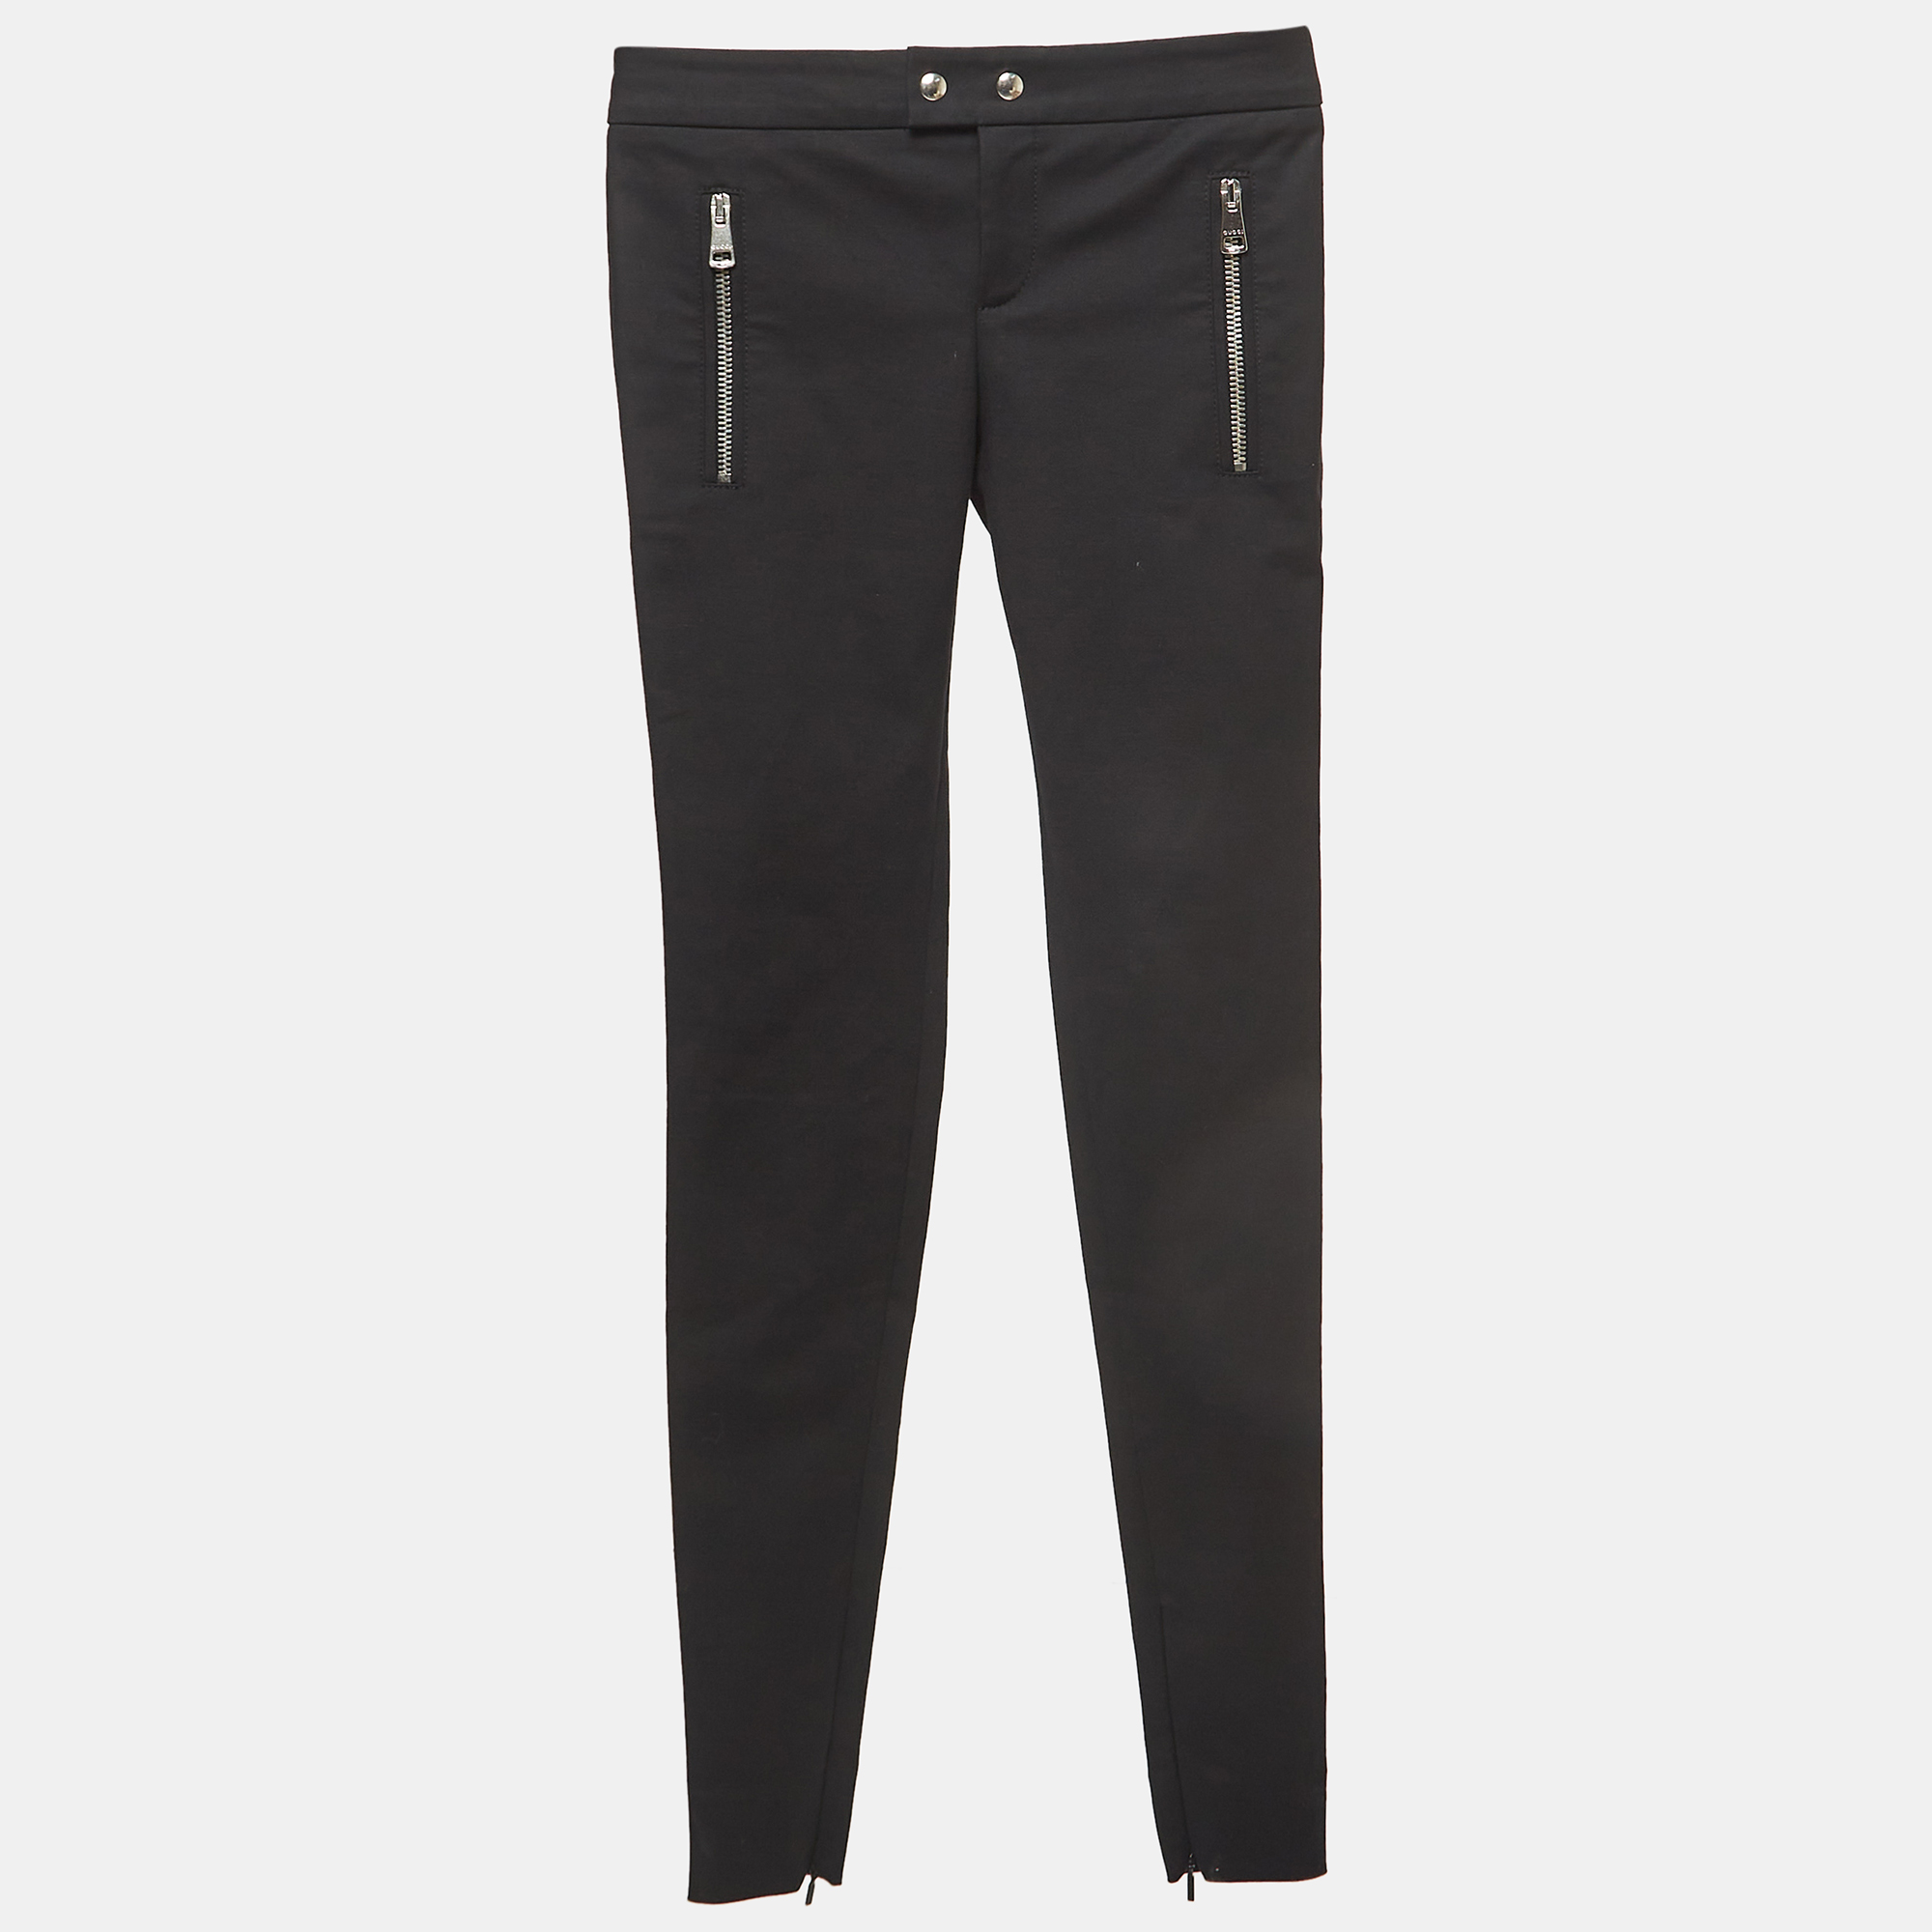 Gucci black cotton zipper detail skinny pants xs